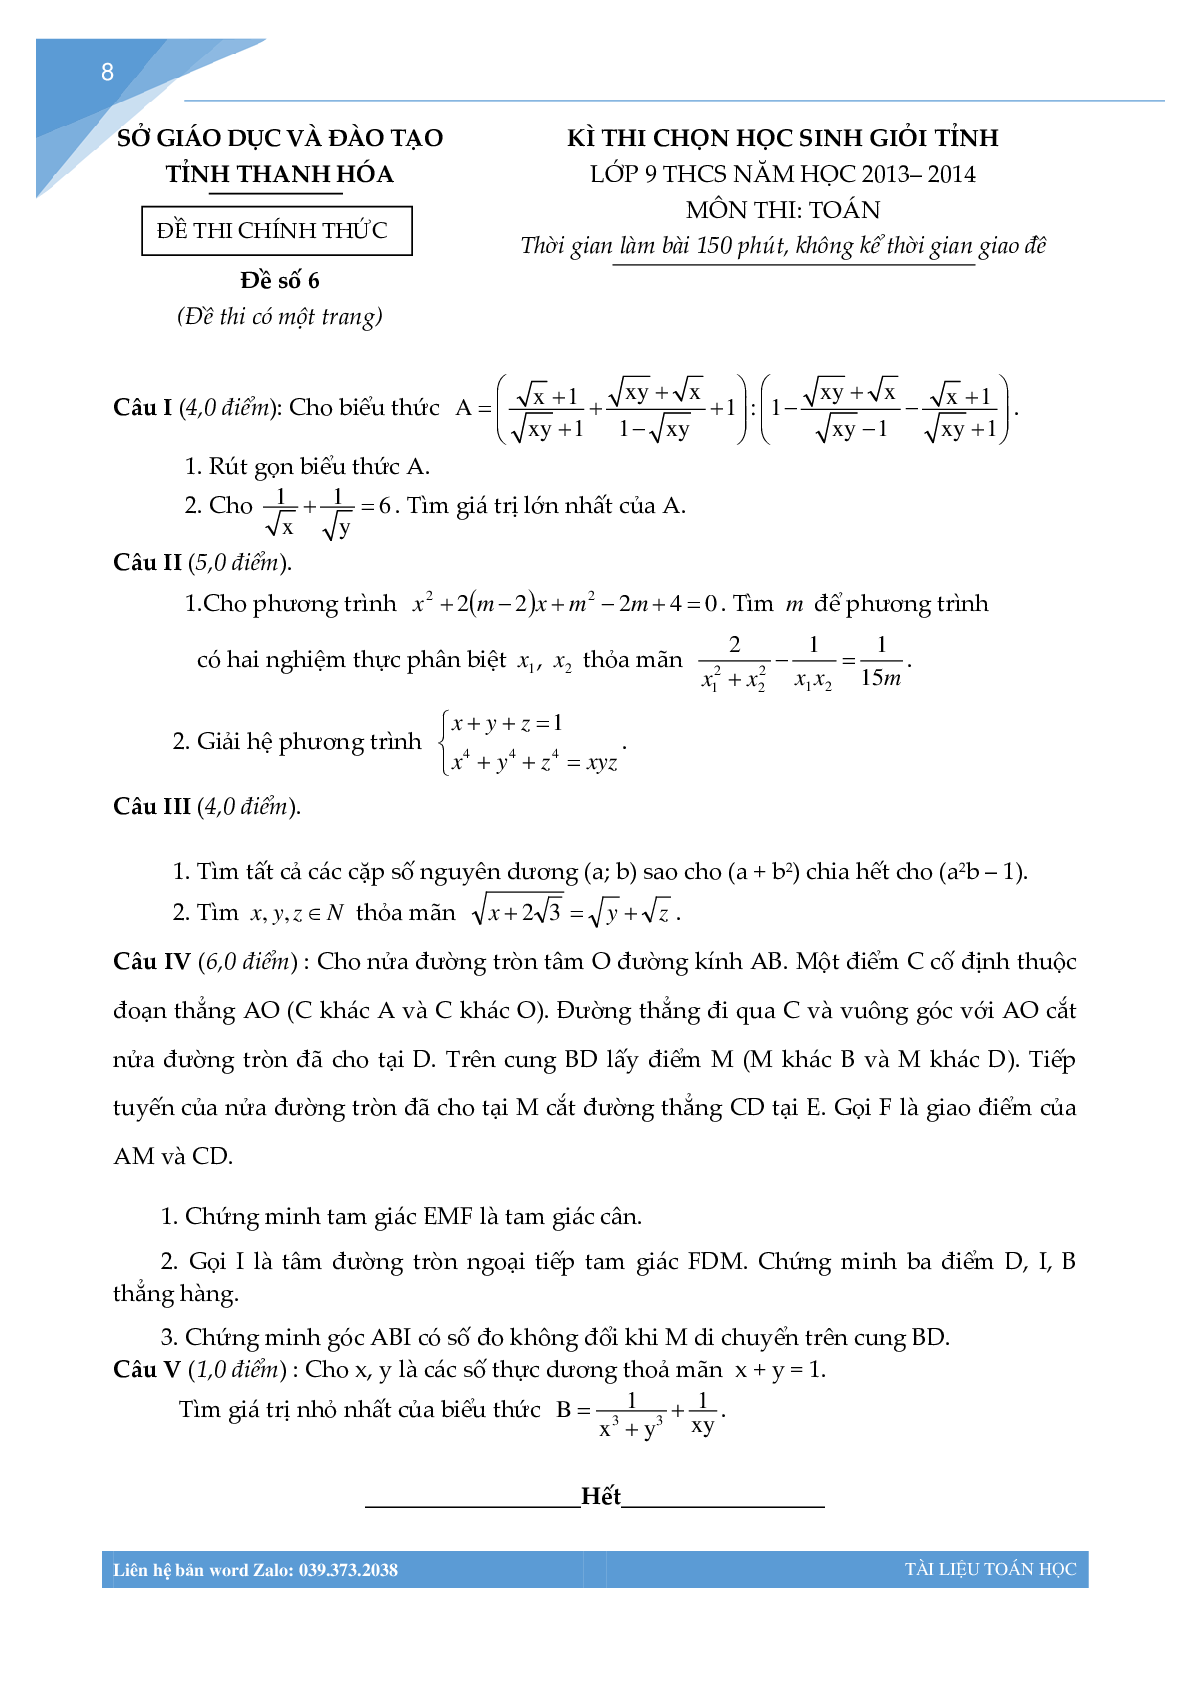 Bộ đề học sinh giỏi môn toán lớp 9 tỉnh Thanh Hóa (trang 7)